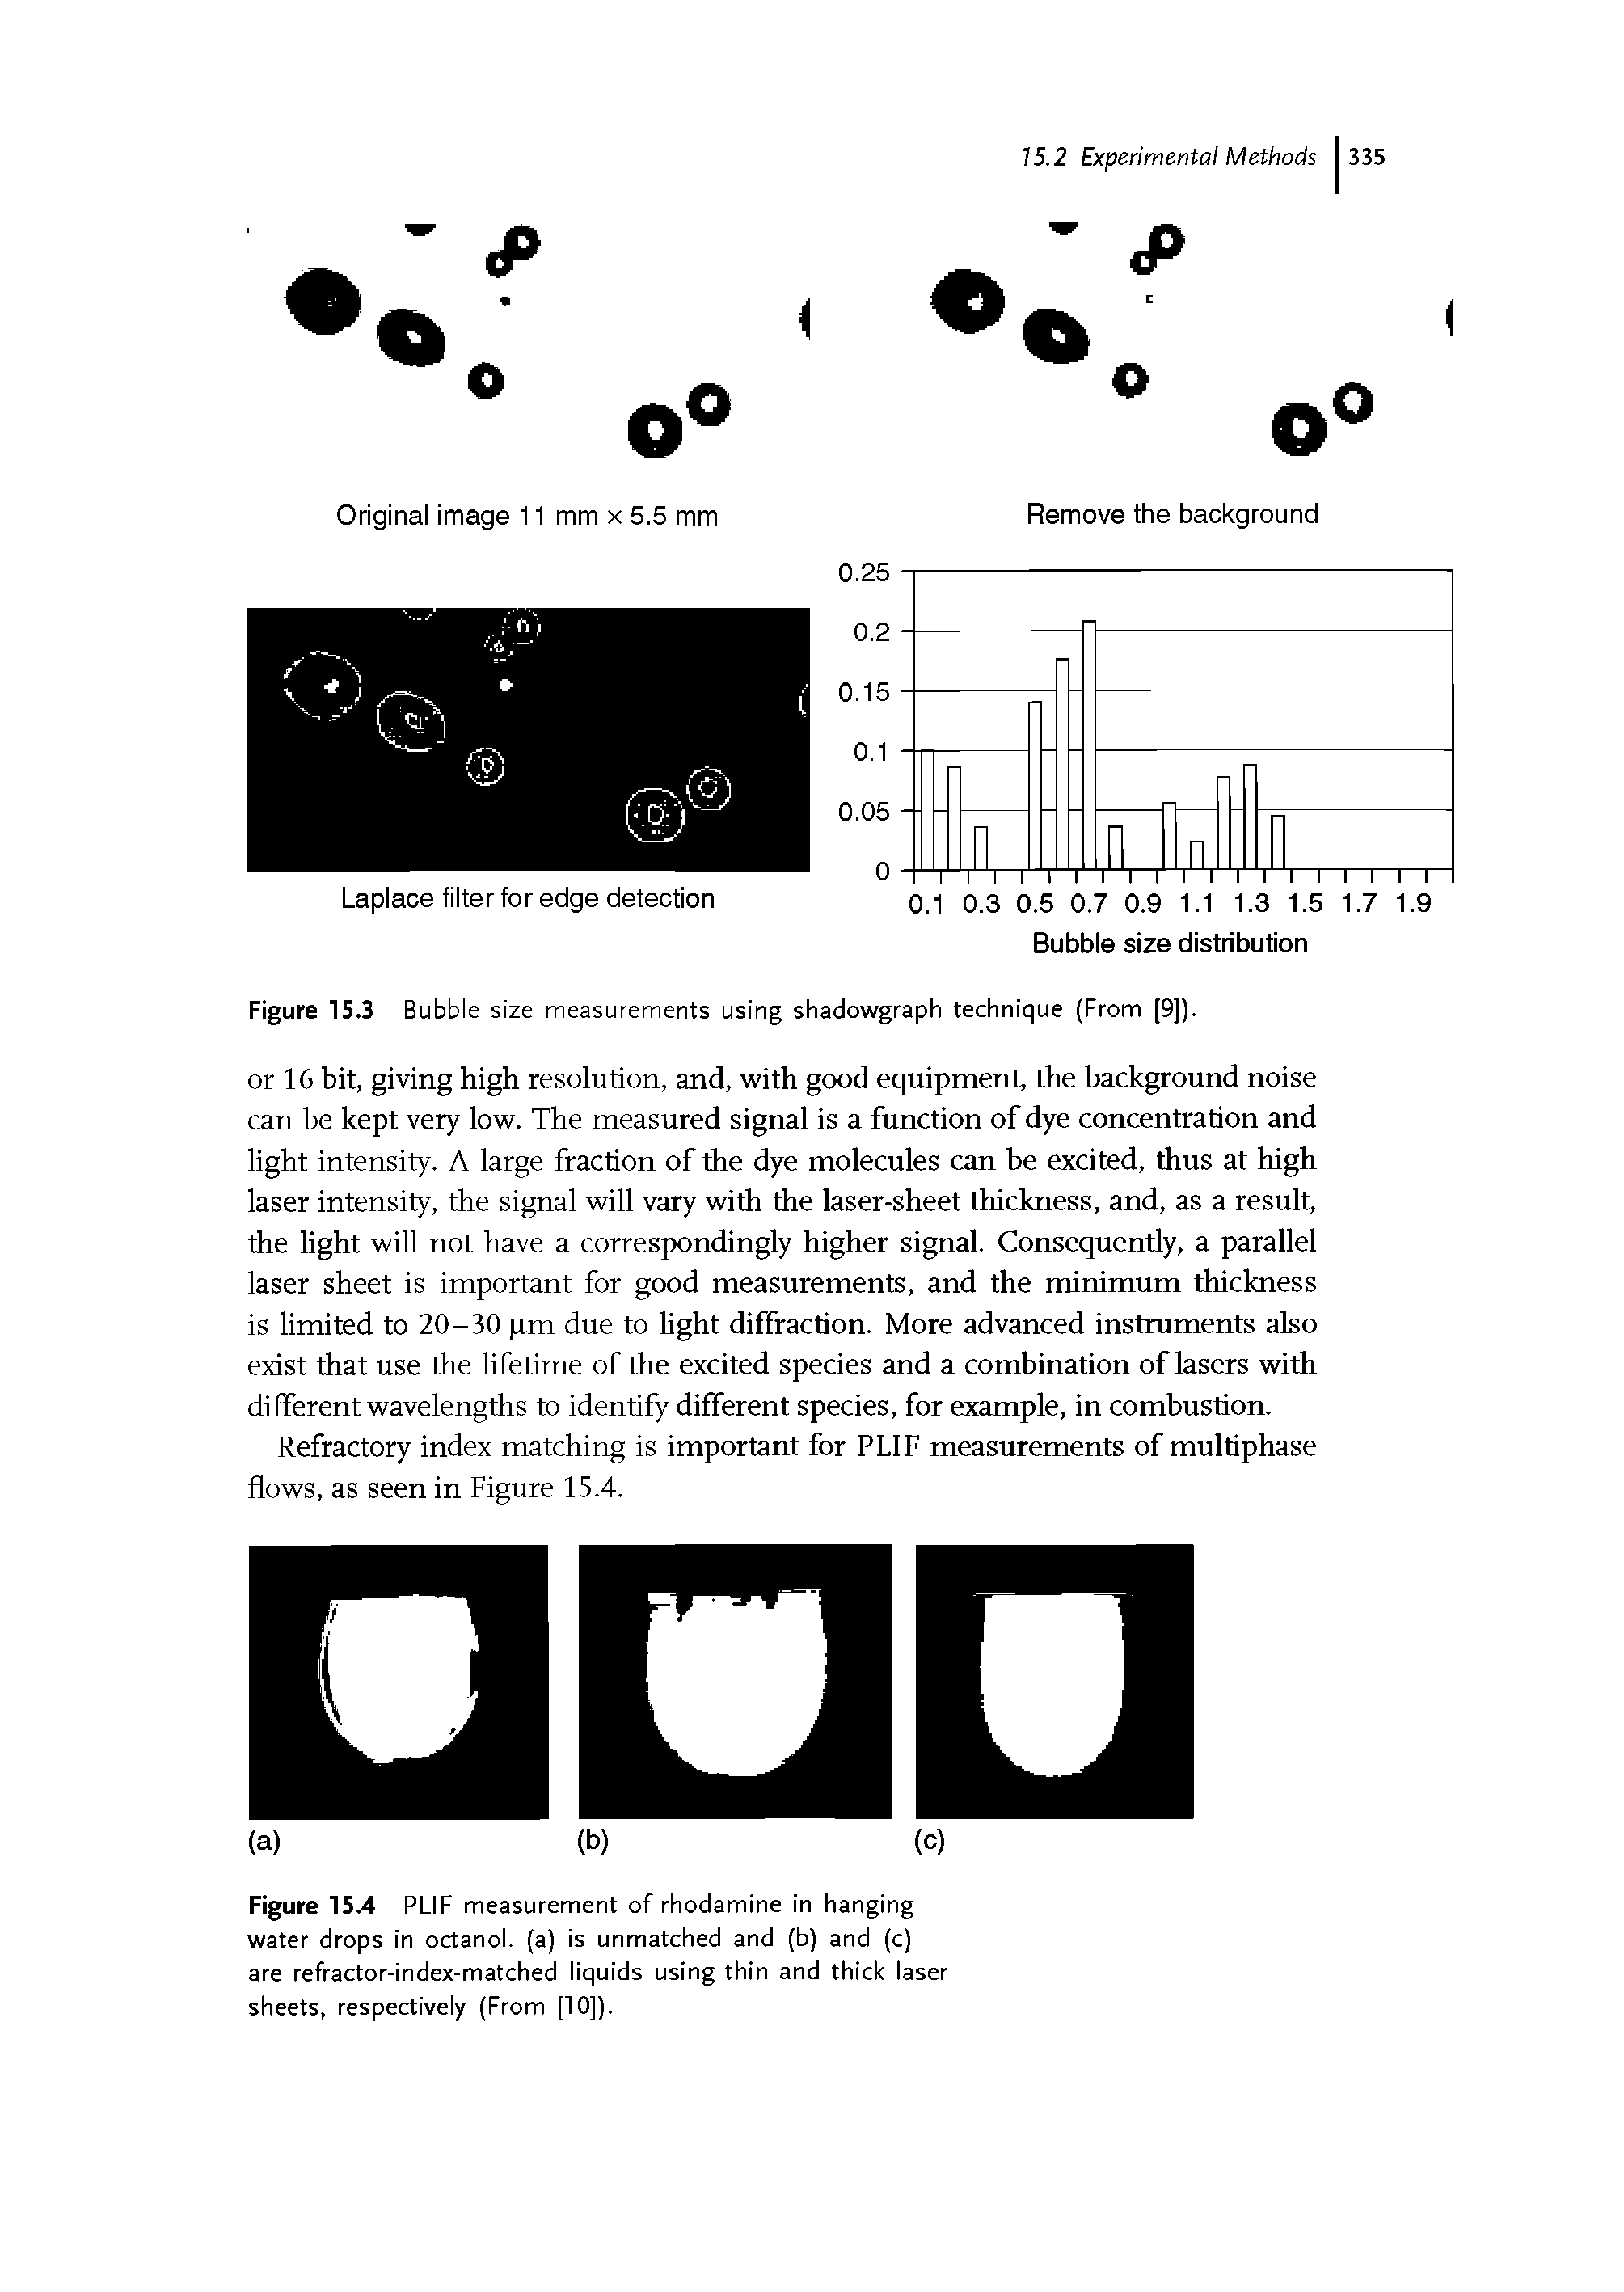 Figure 15.3 Bubble size measurements using shadowgraph technique (From [9]).